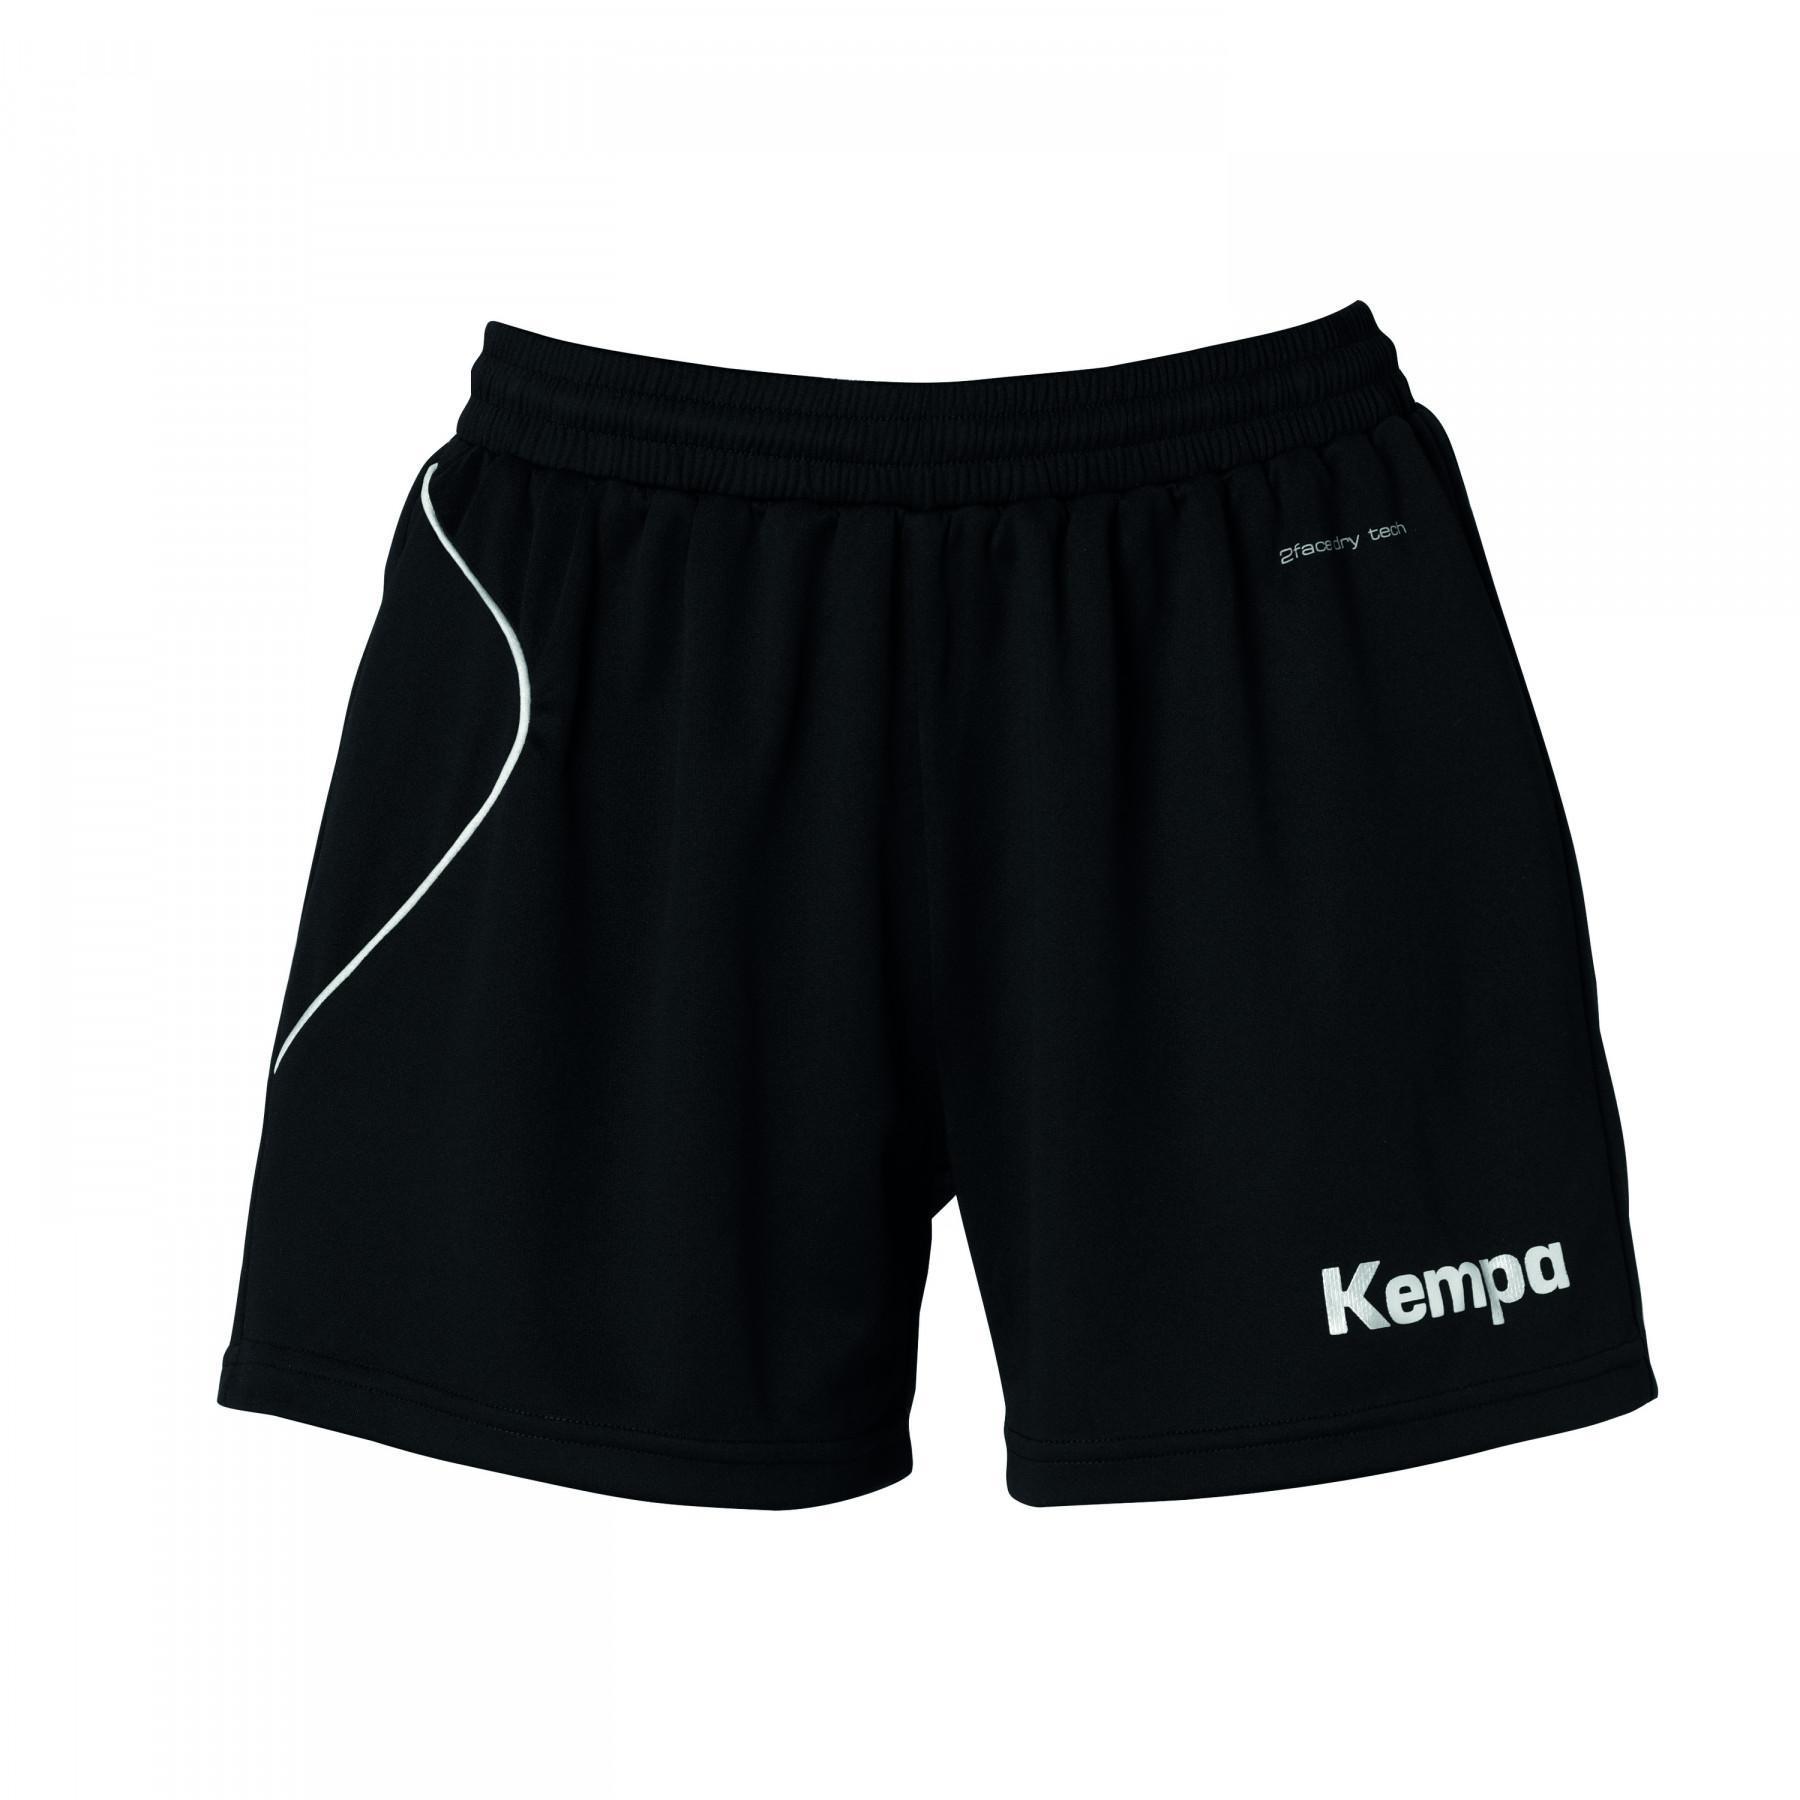 Women's shorts Kempa Curve